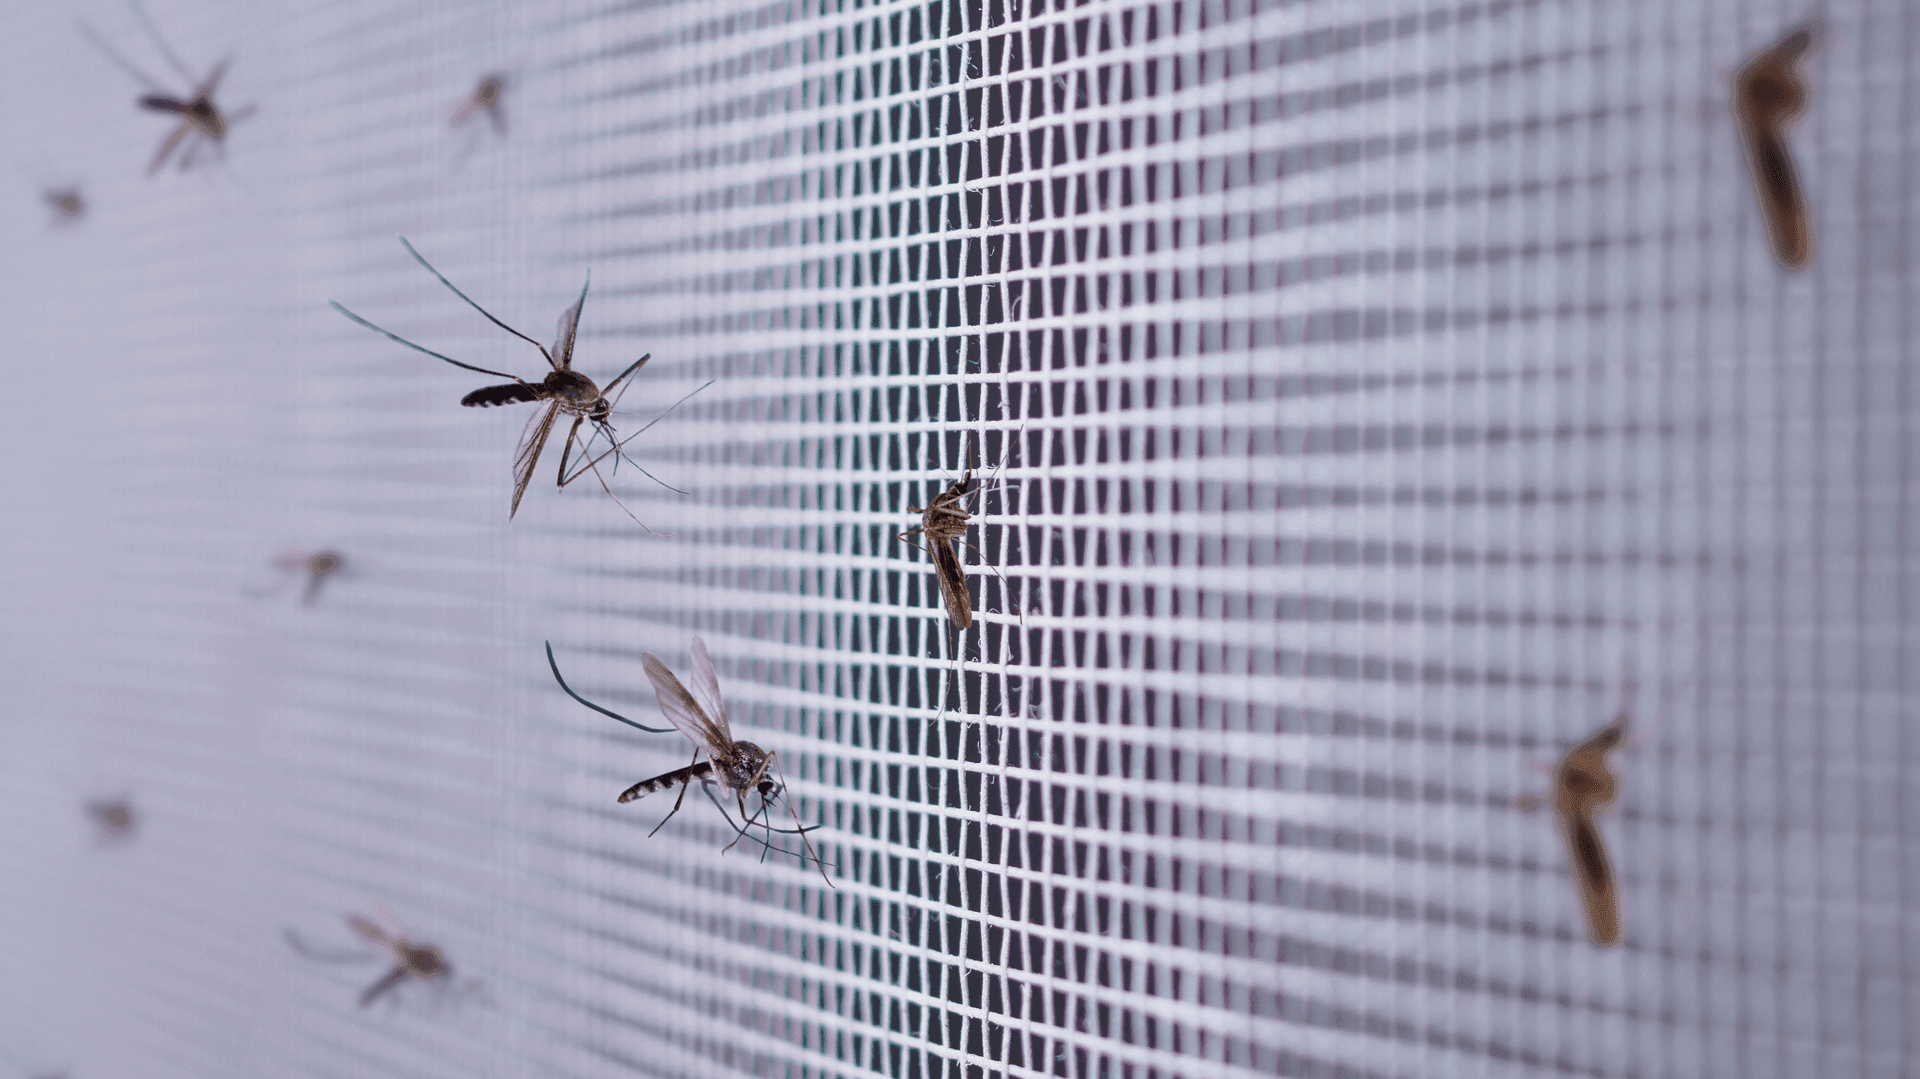 Detailní pohled na síť proti hmyzu s přilétajícím komáry, zdůrazňující účinnost ochrany domácnosti před obtížným hmyzem.